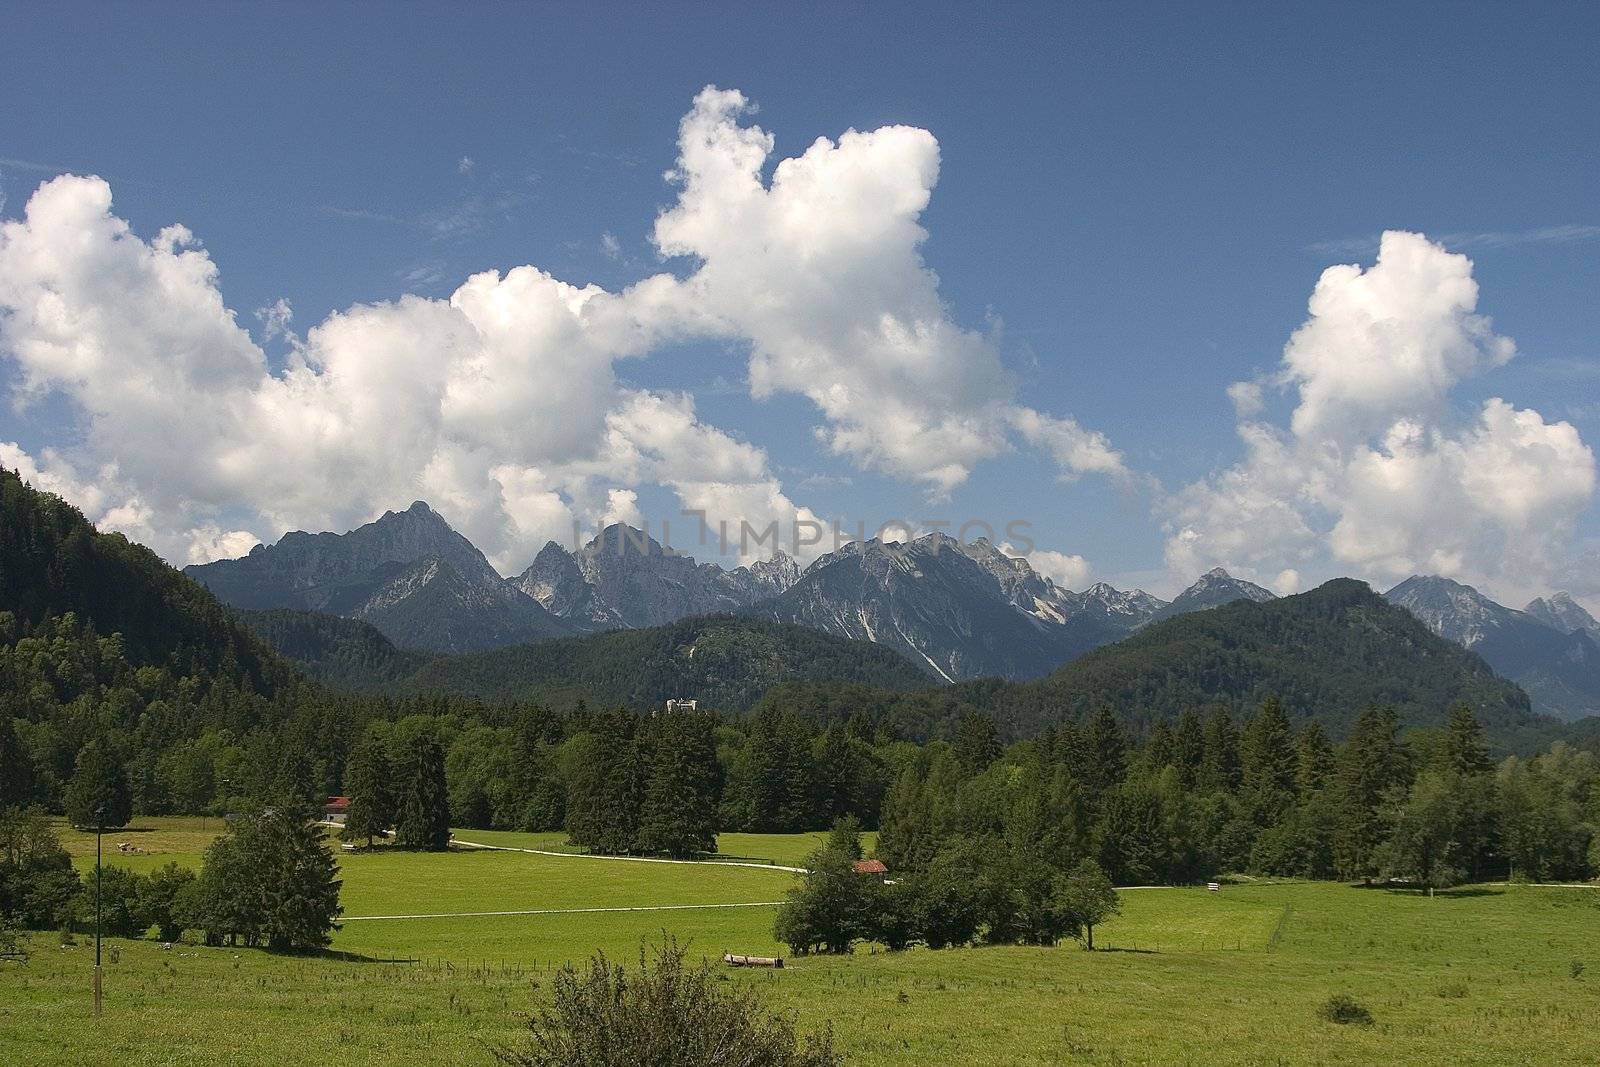 Beautiful pasture and mountains in Germany ( Allg�u )
Sch�ne Weide und Berge in Deutschland 
